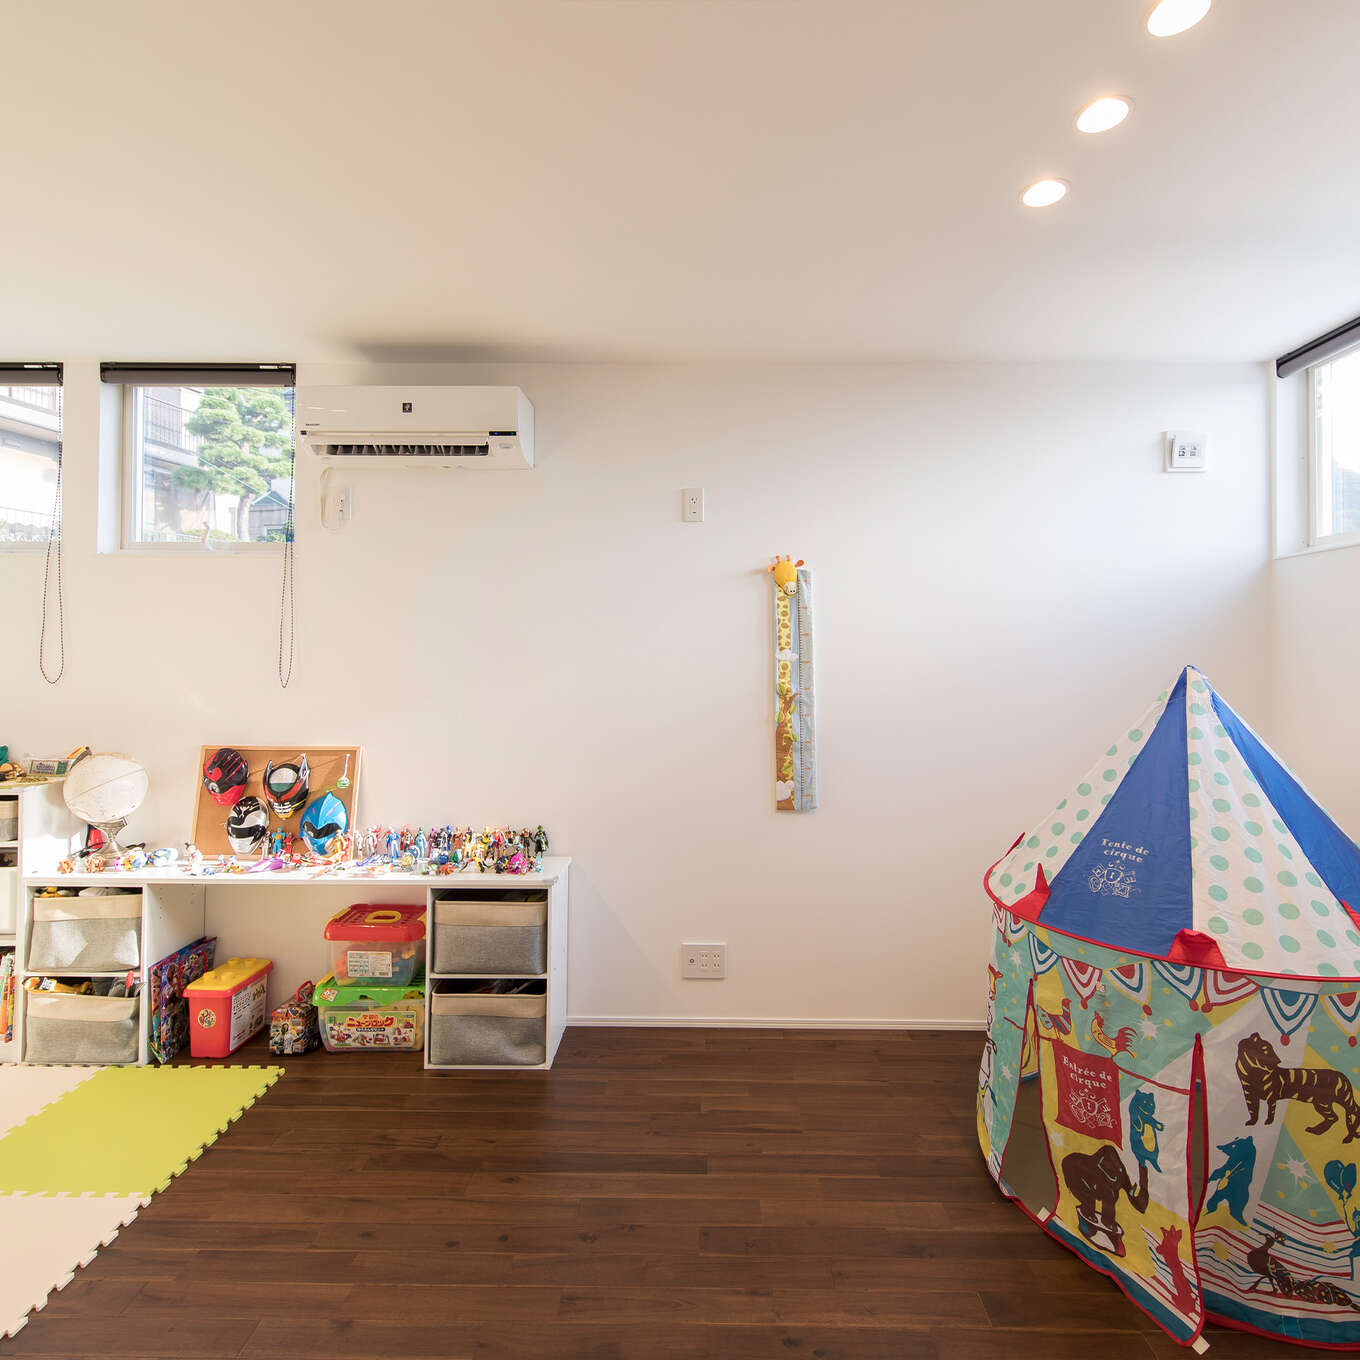 R+houseの物件の子ども部屋の写真です。濃いめのブラウンの無垢の床と白い壁と天井。高い位置に窓がある。